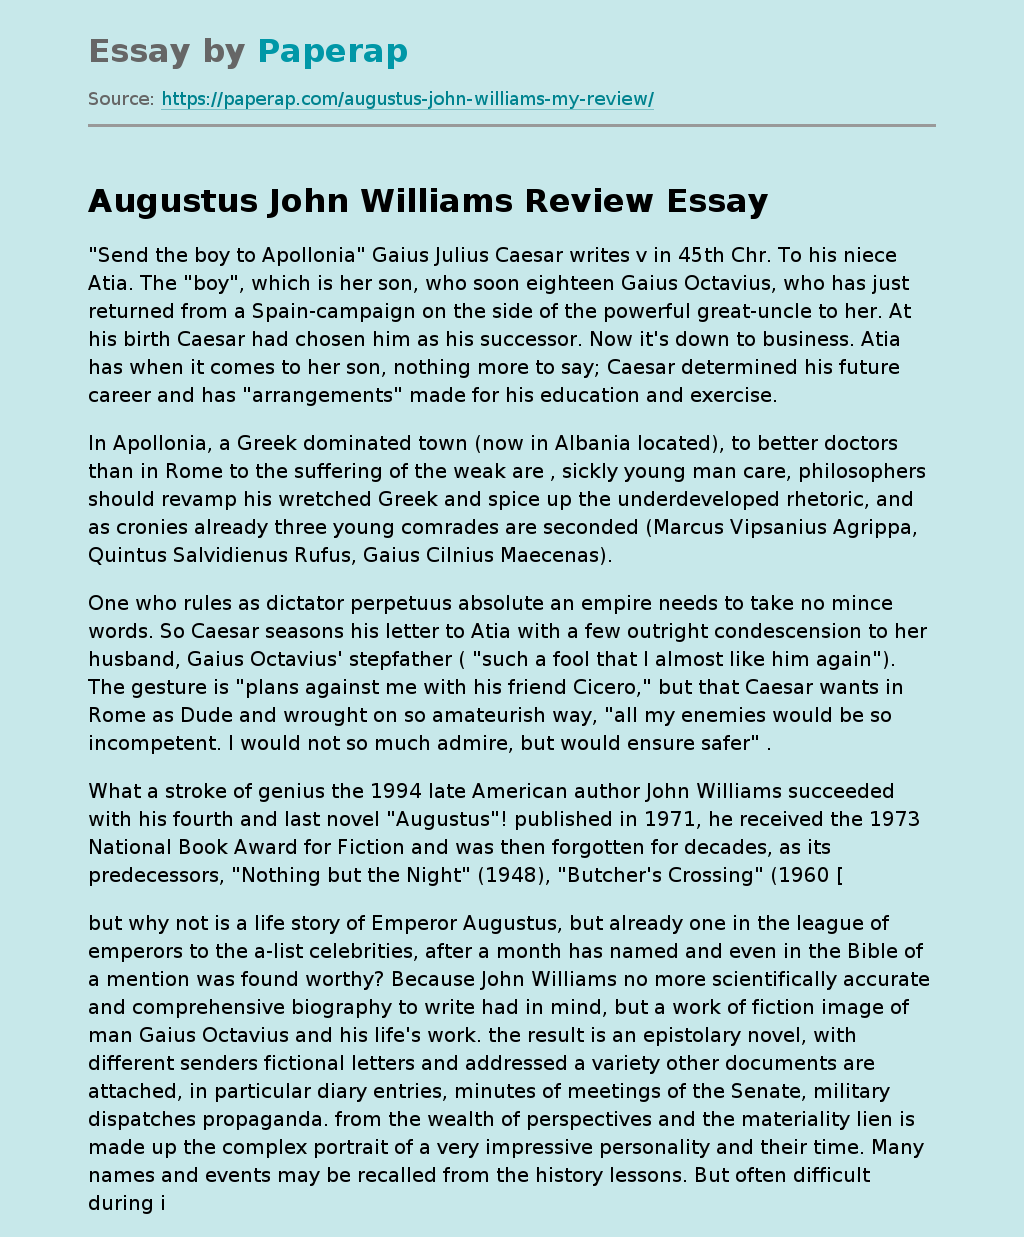 Novel "Augustus" by John Williams